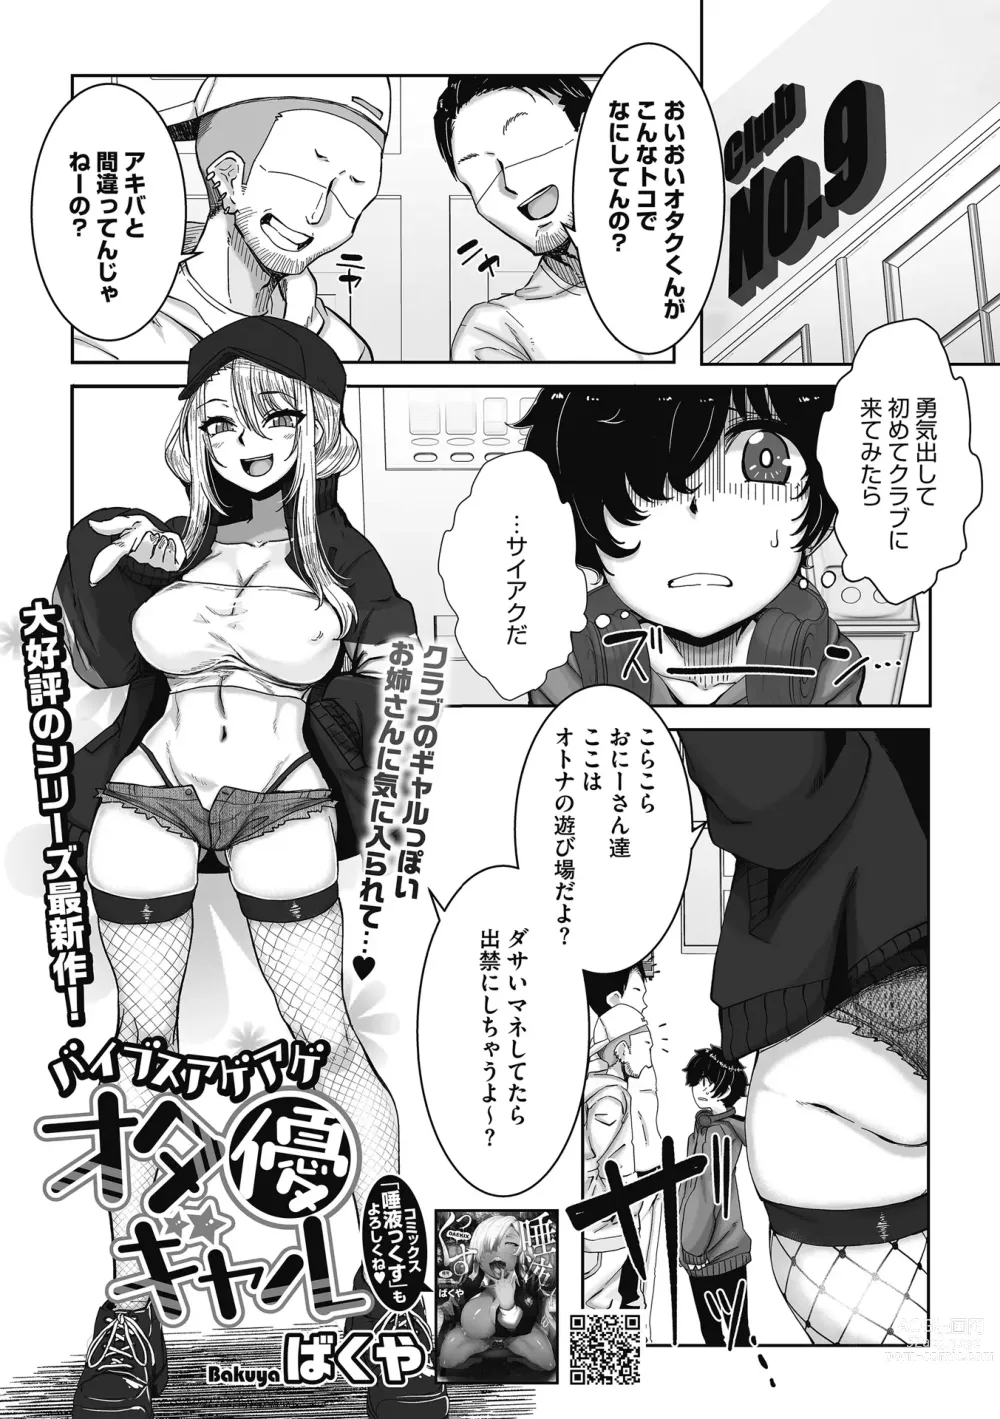 Page 3 of manga Otaku ni Yasashii Gal wa iru!